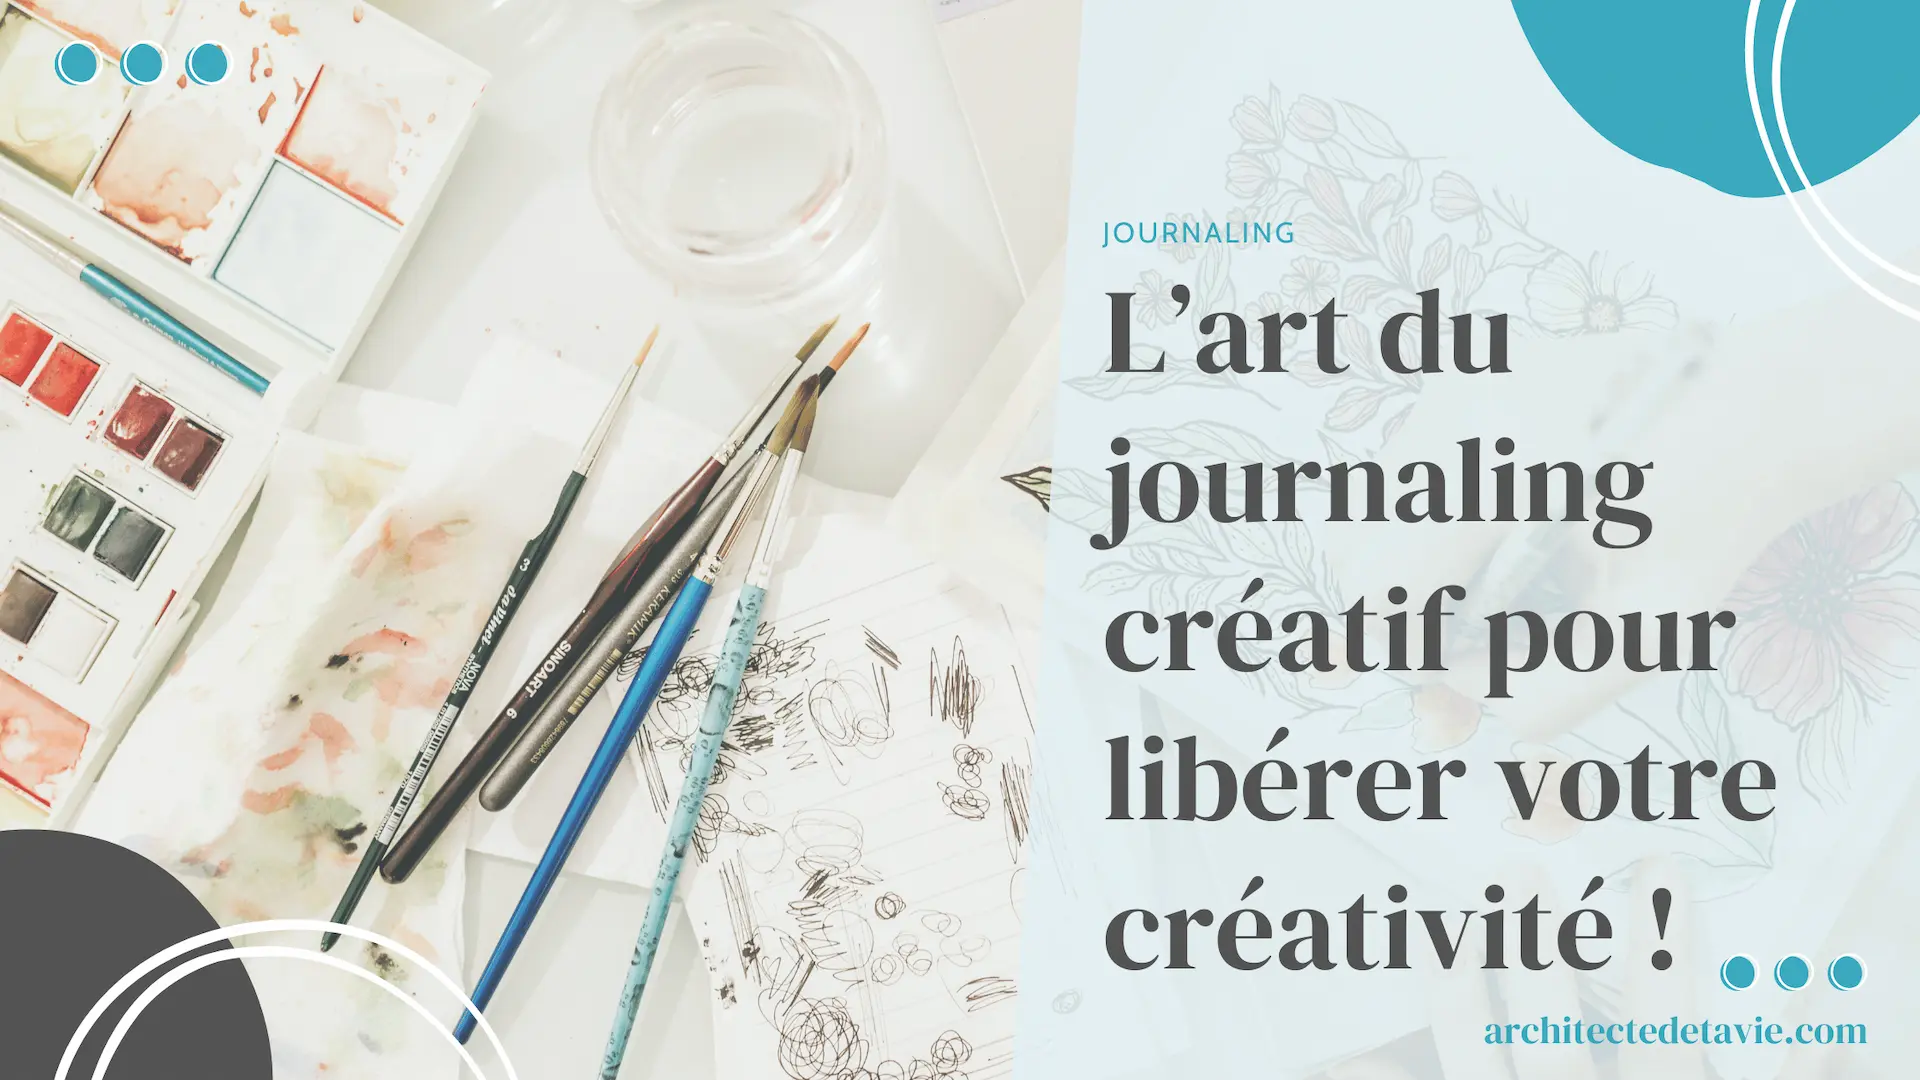 (Blogging) Image à la Une - L’art du journaling créatif _ découvrez comment libérer votre créativité intérieure !